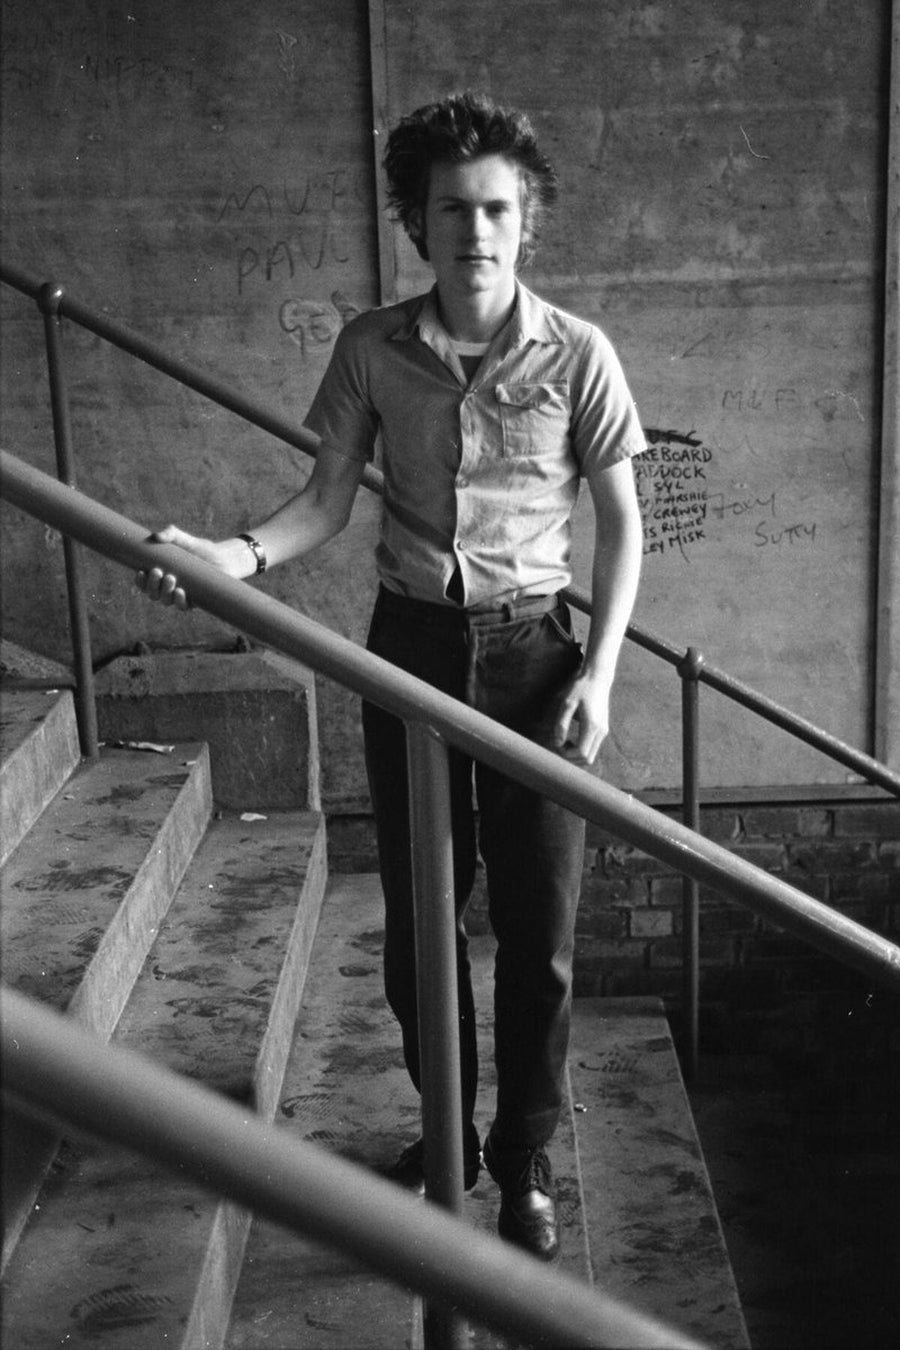 Fan Standing on the Stairwell by Iain SP Reid - c. 1976